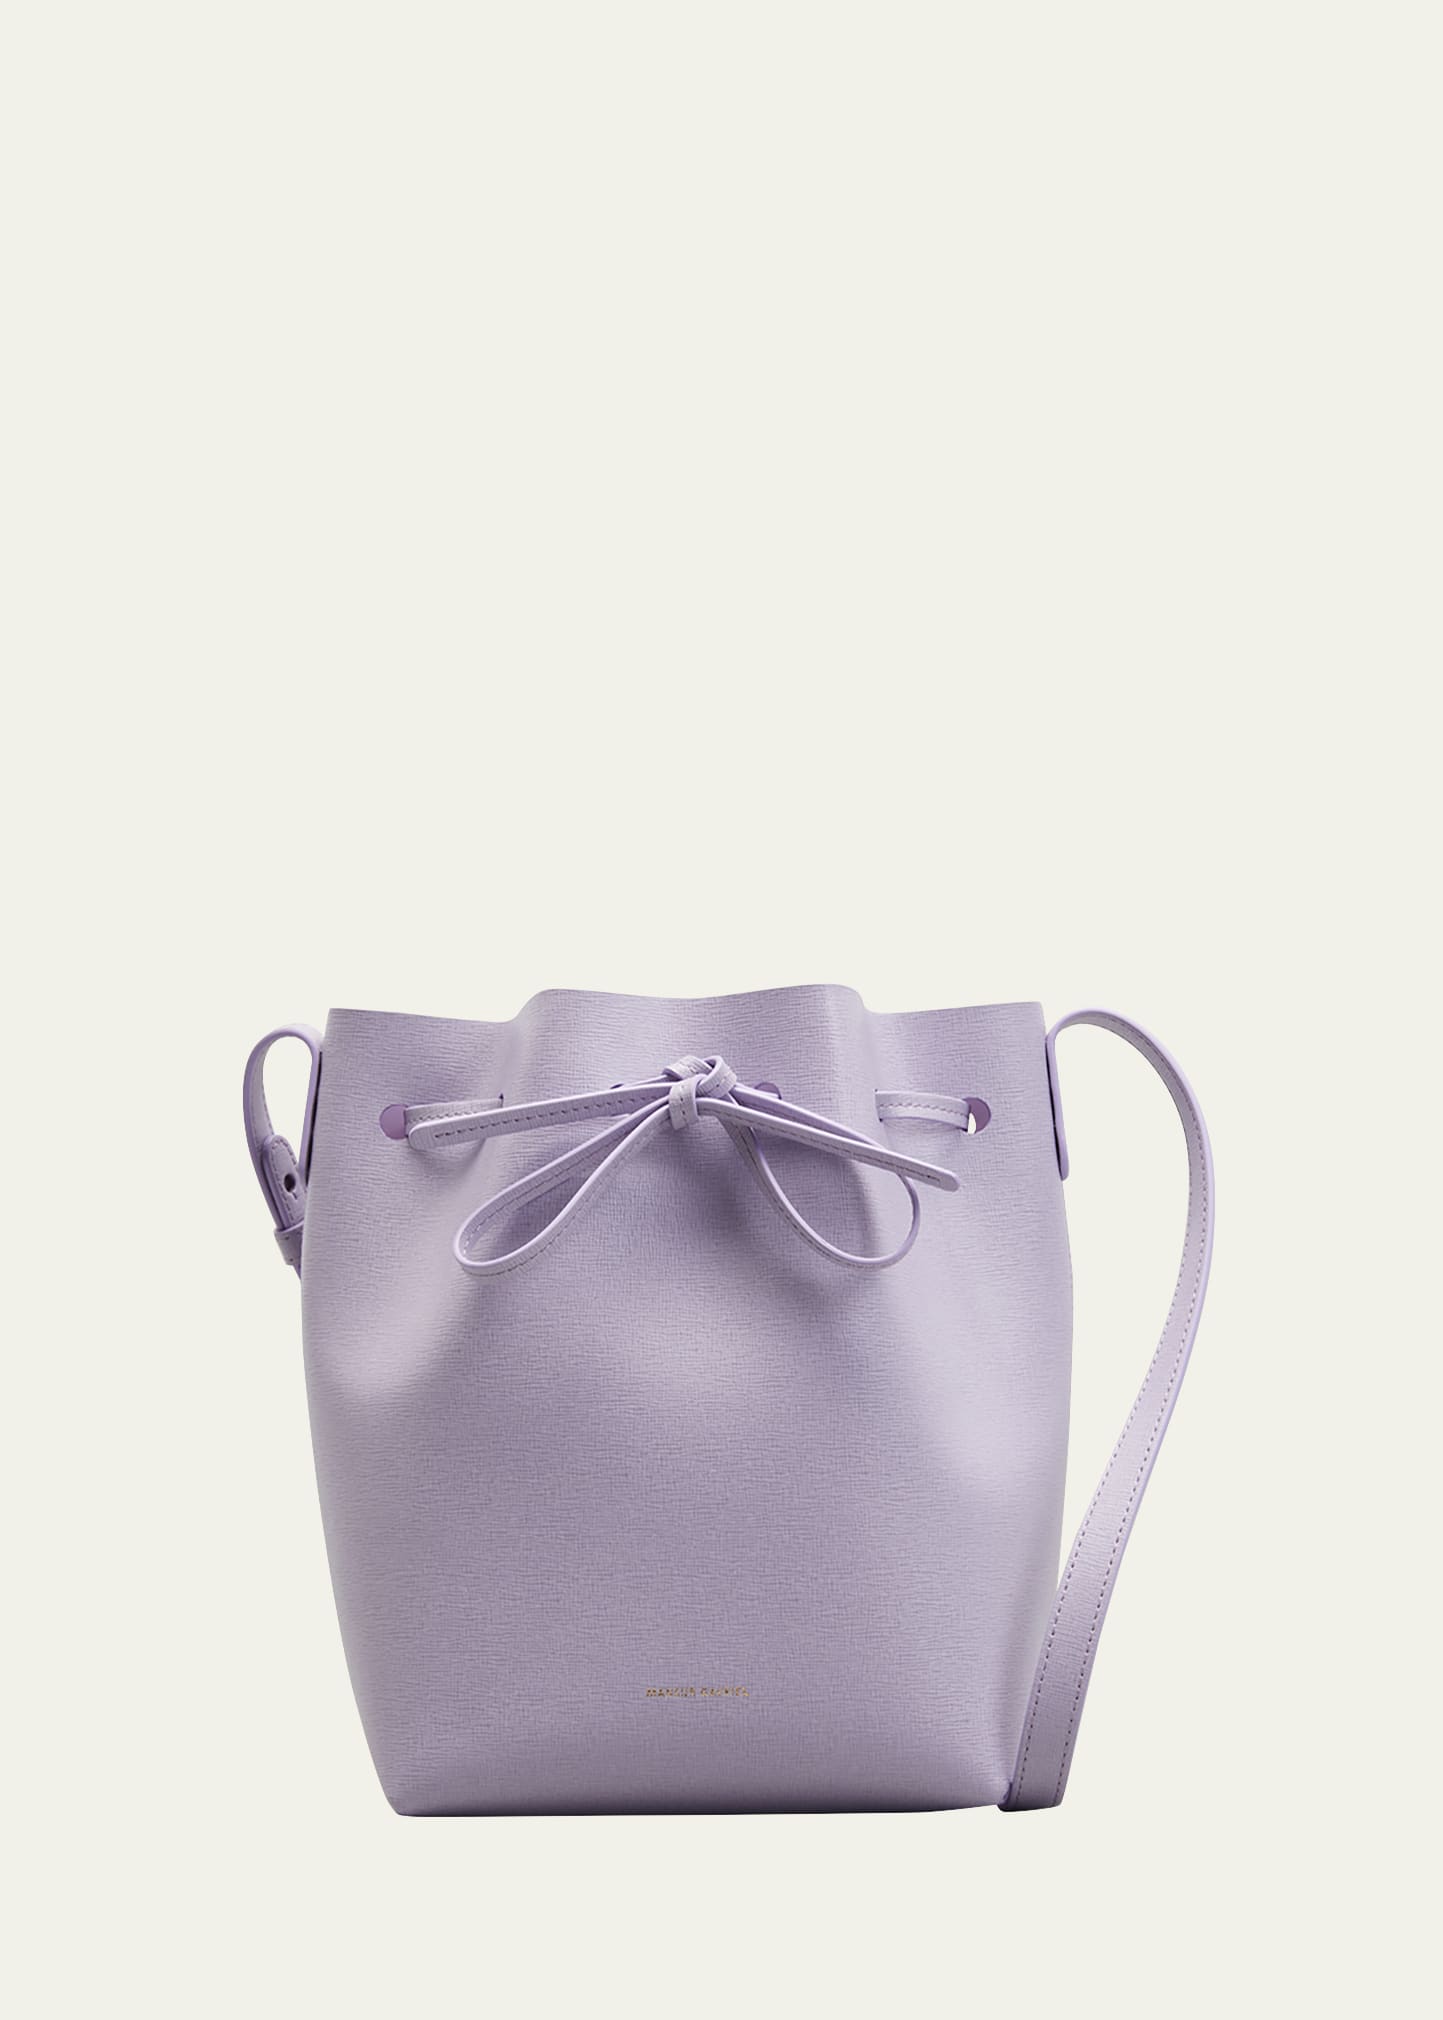 Mansur Gavriel Saffiano Mini Bucket Bag in Rosa